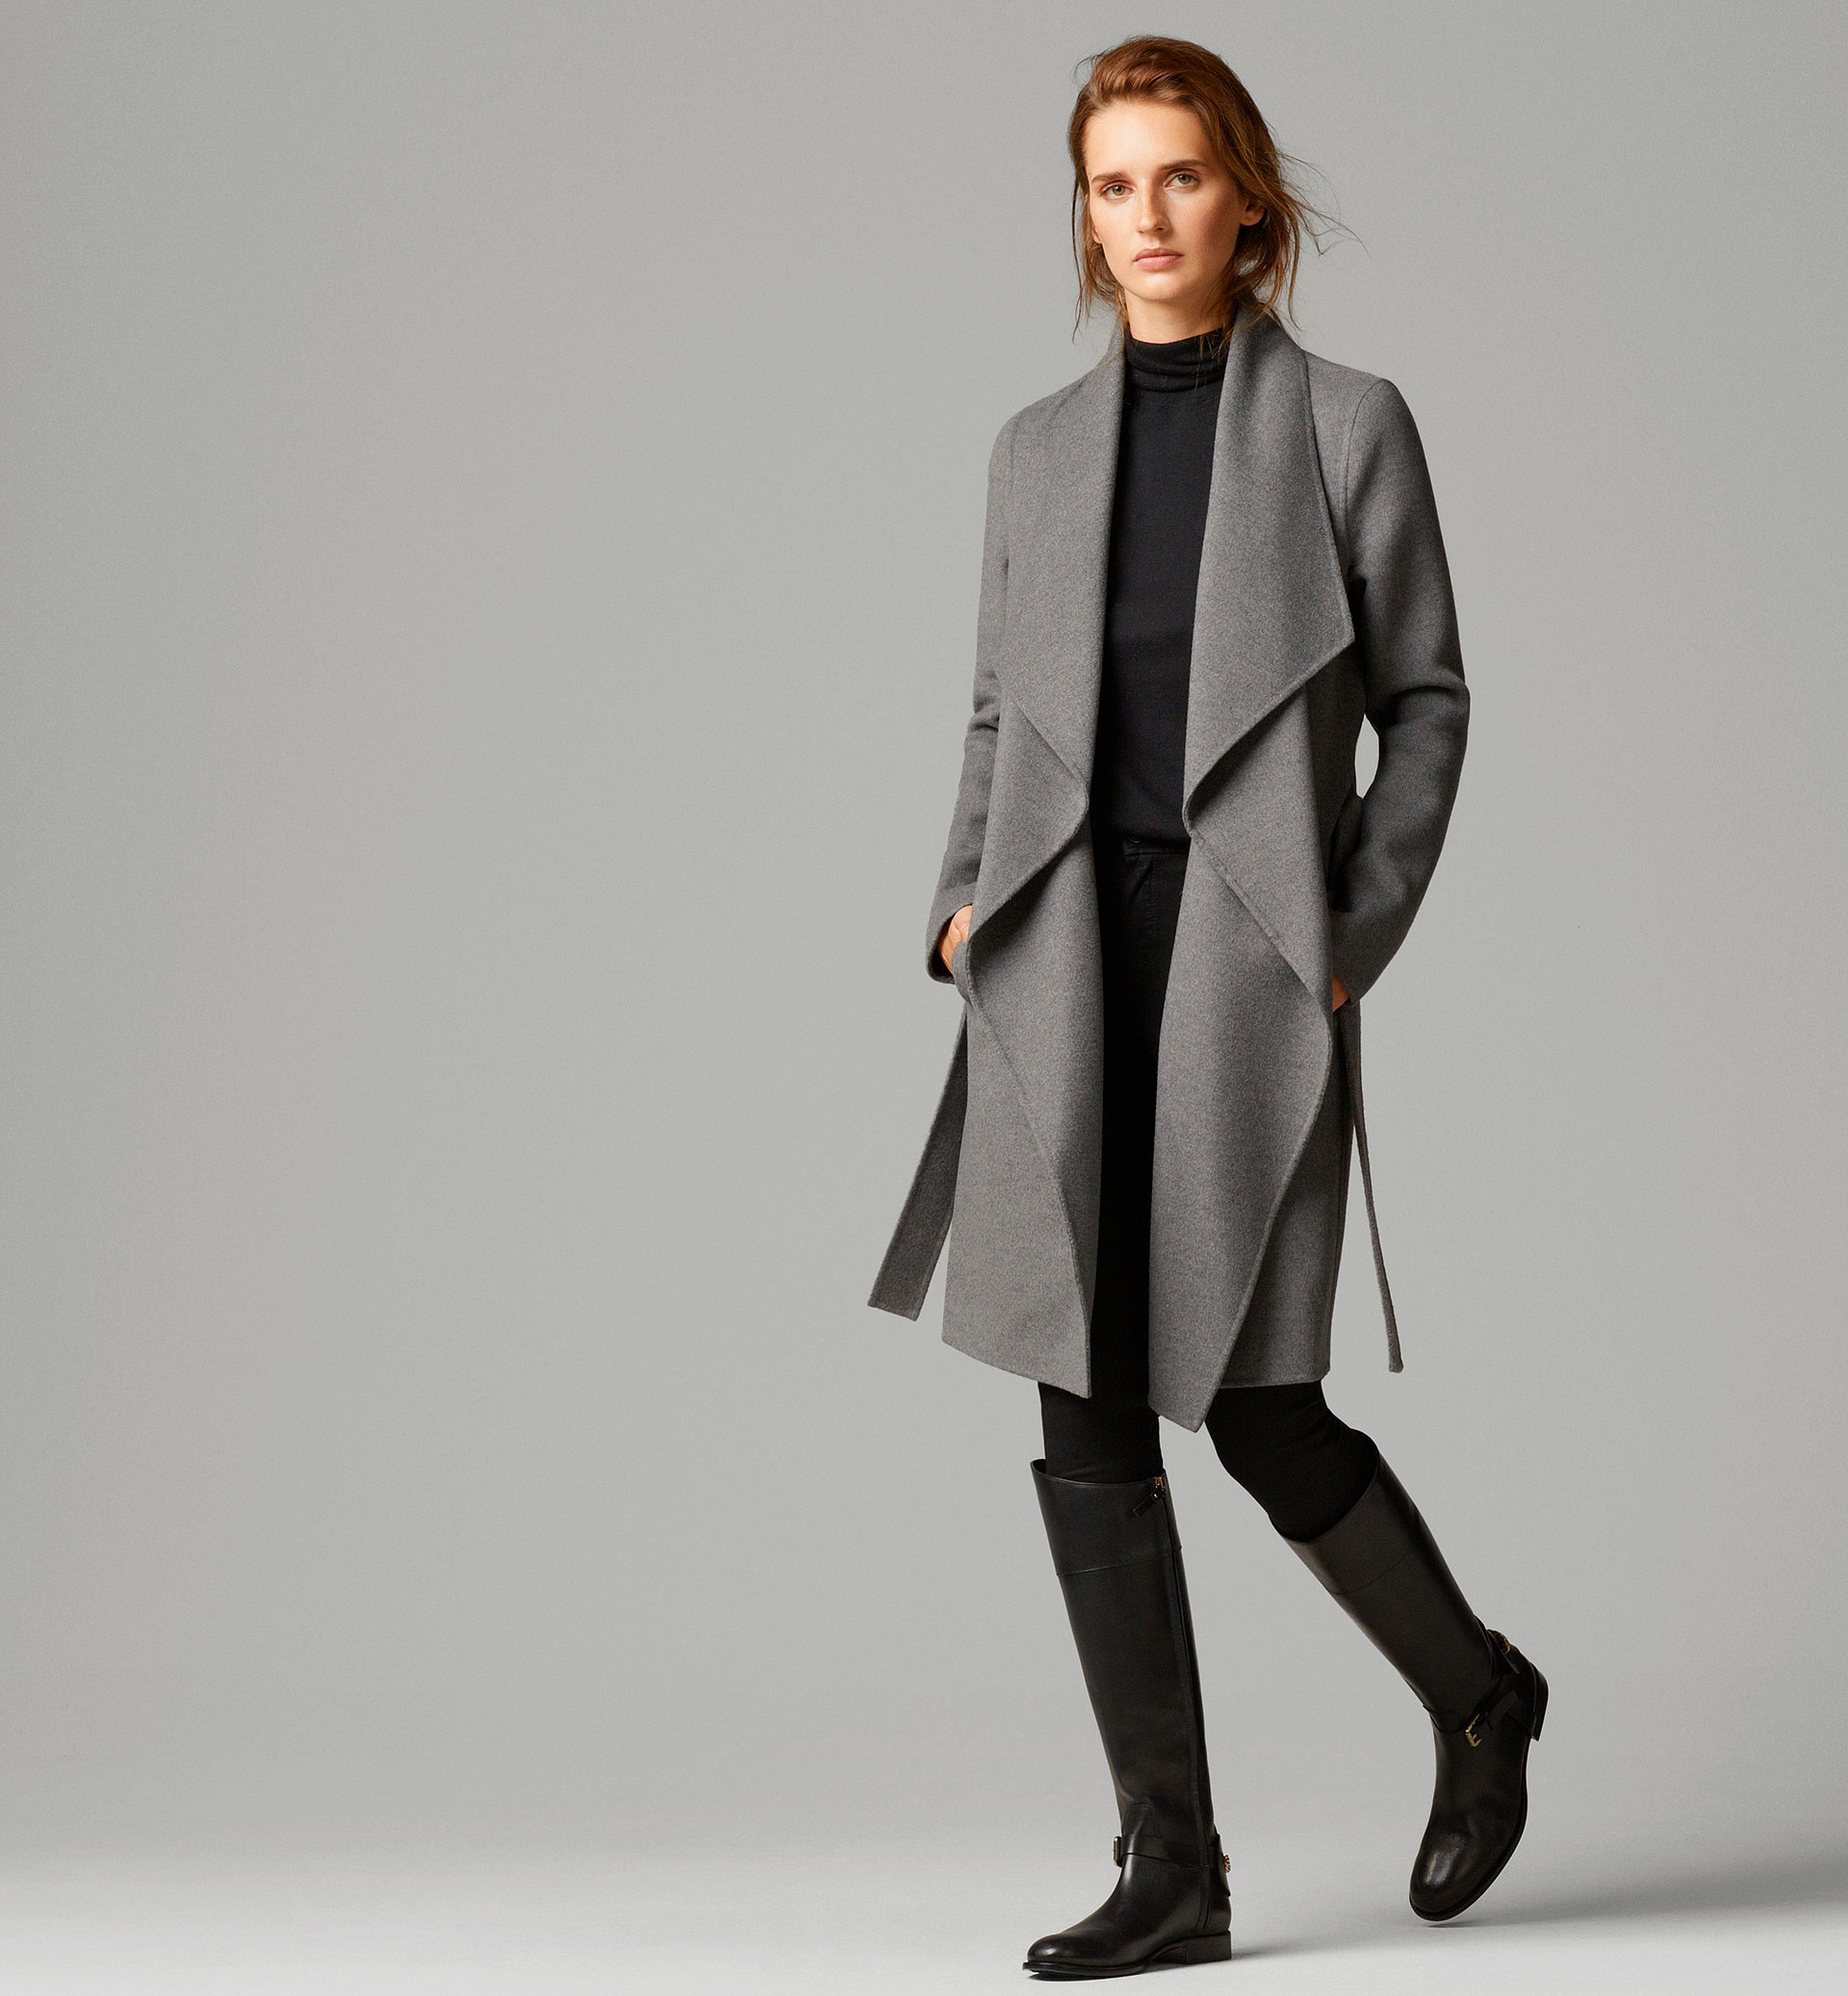 Sui Encommium comentarista Massimo Dutti, nueva colección abrigos y chaquetas otoño invierno 2014 -  Modalia.es